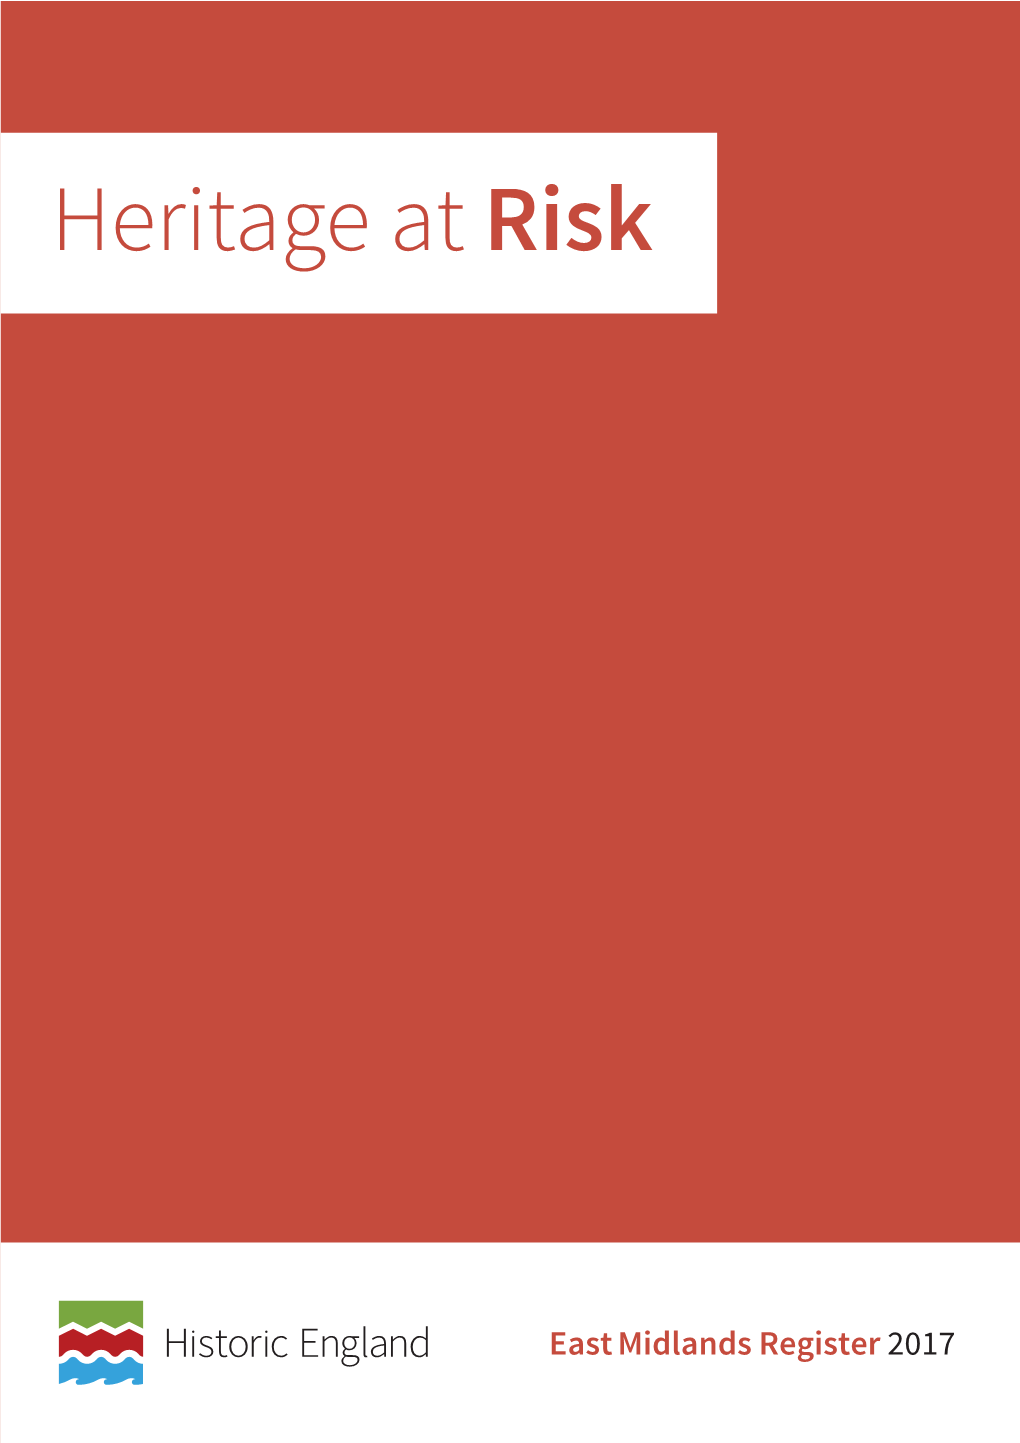 Heritage at Risk Register 2017, East Midlands